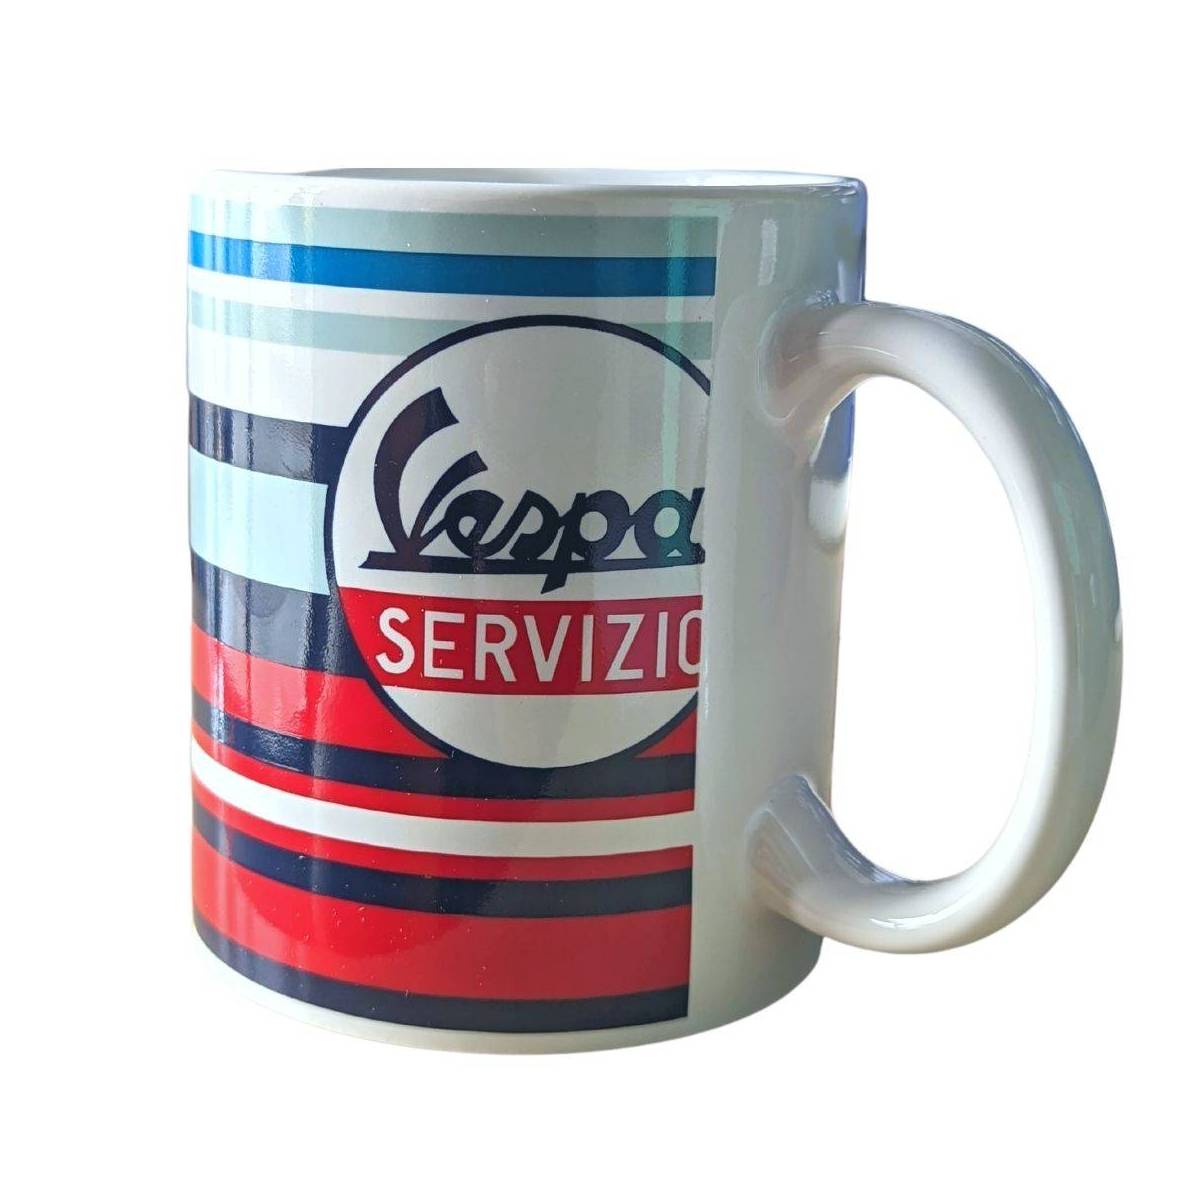 Mug Vespa Servizio ceramic 33 ml blue, red, white stripes